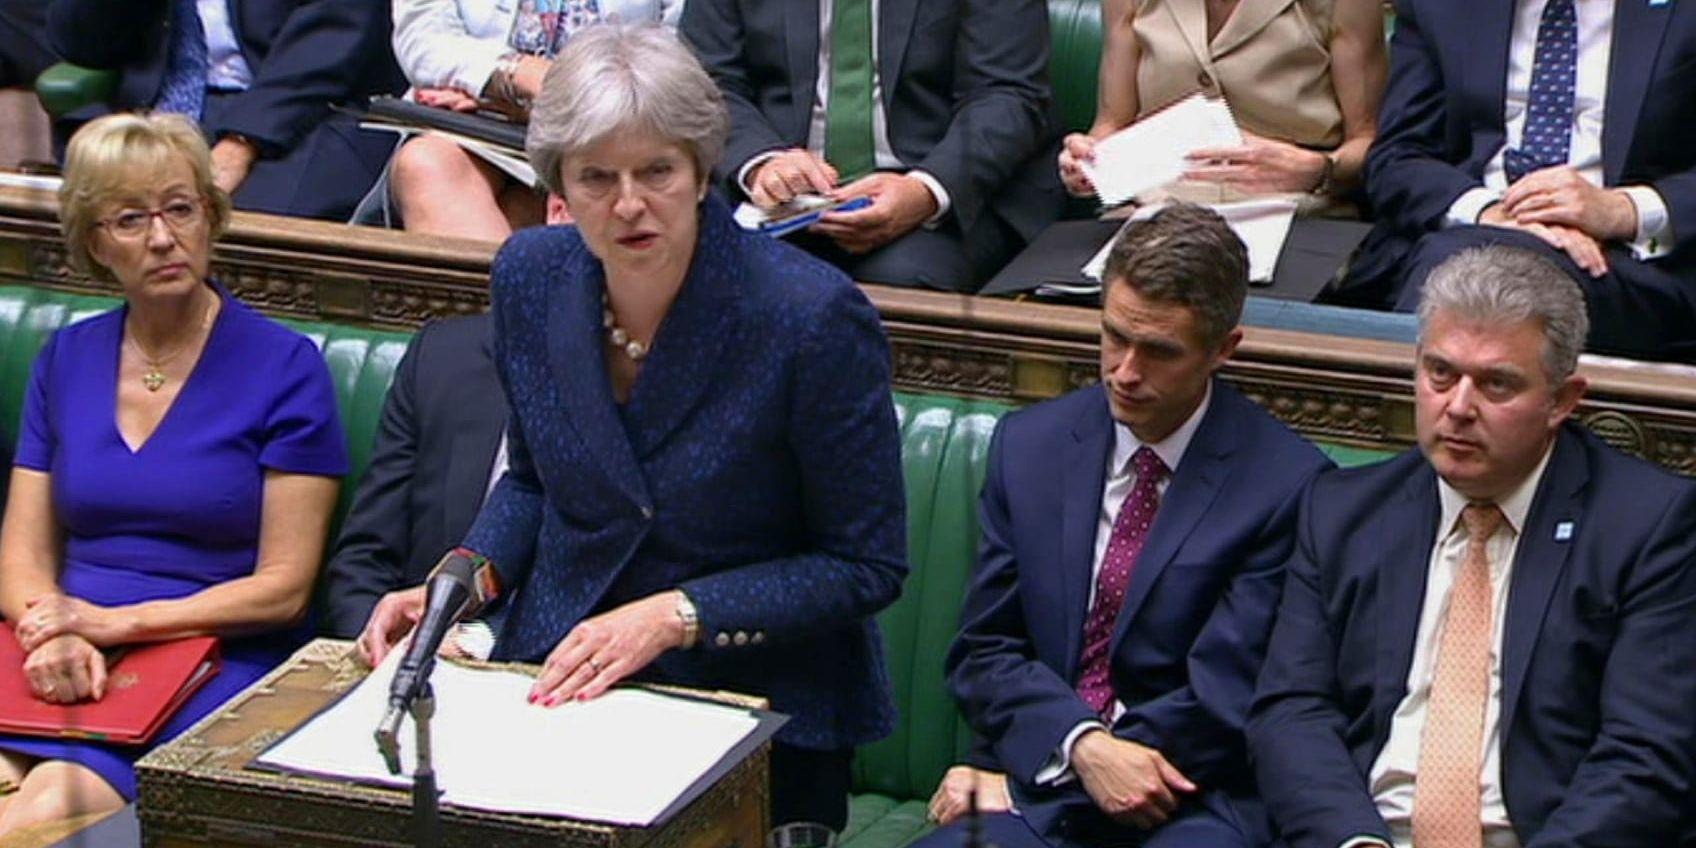 Storbritanniens premiärminister Theresa May har fått kämpa hårt för att nå en överenskommelse kring sin mjuka brexit. Men kampen är inte över. Nu fruktar britterna att London kan misslyckas med att nå en överenskommelse med EU innan Storbritannien "tippar över klippkanten" den 29 mars 2019.